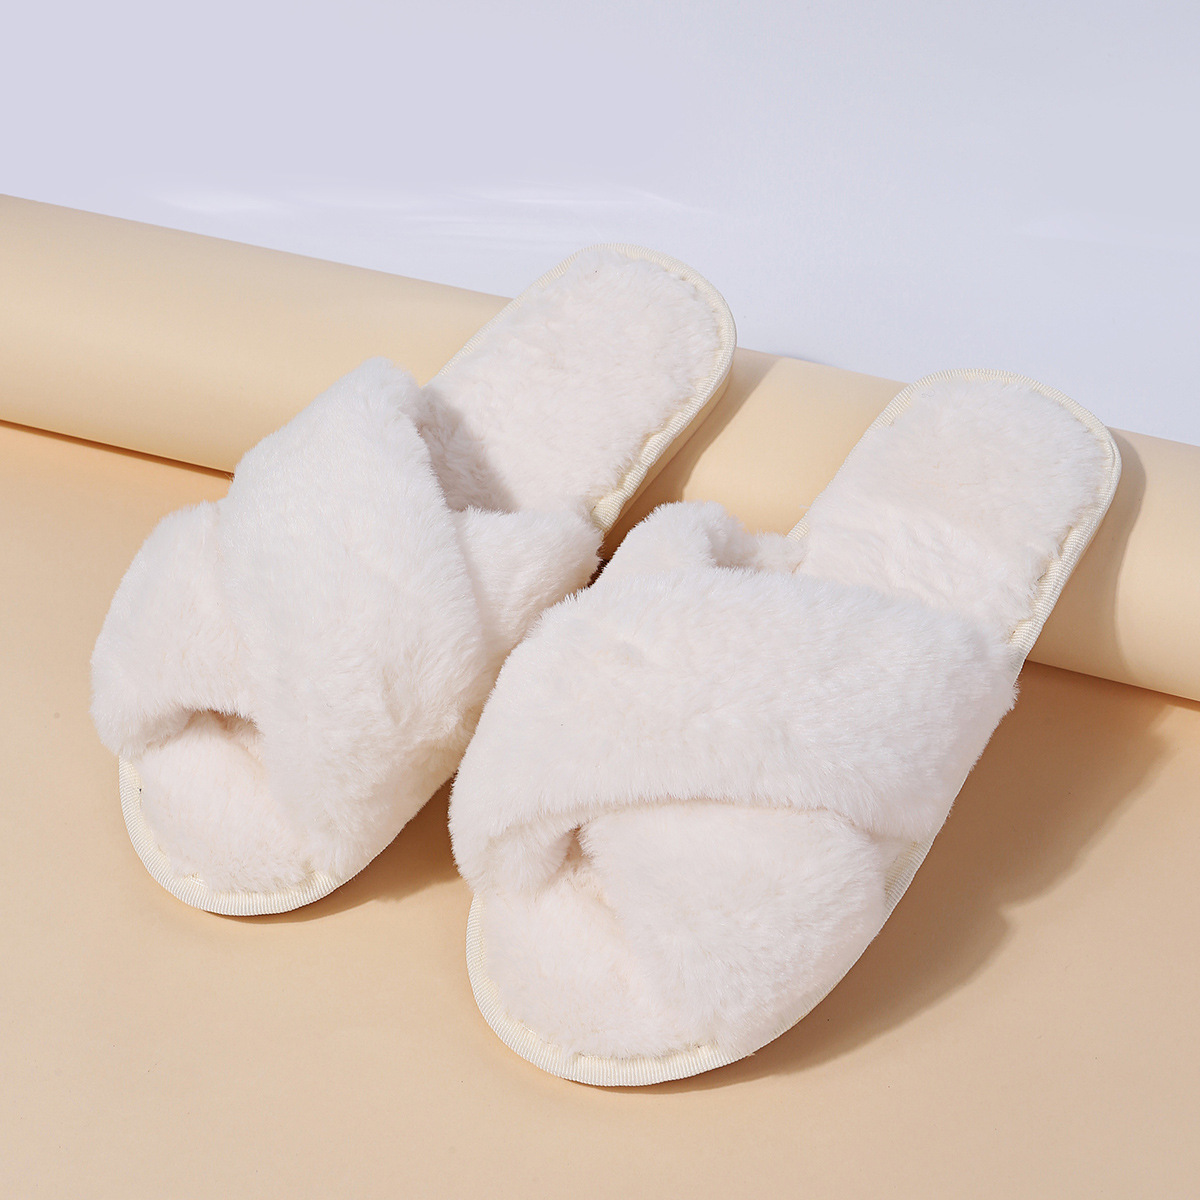 Pantuflas de algodón con pelo de casa NSKJX71190